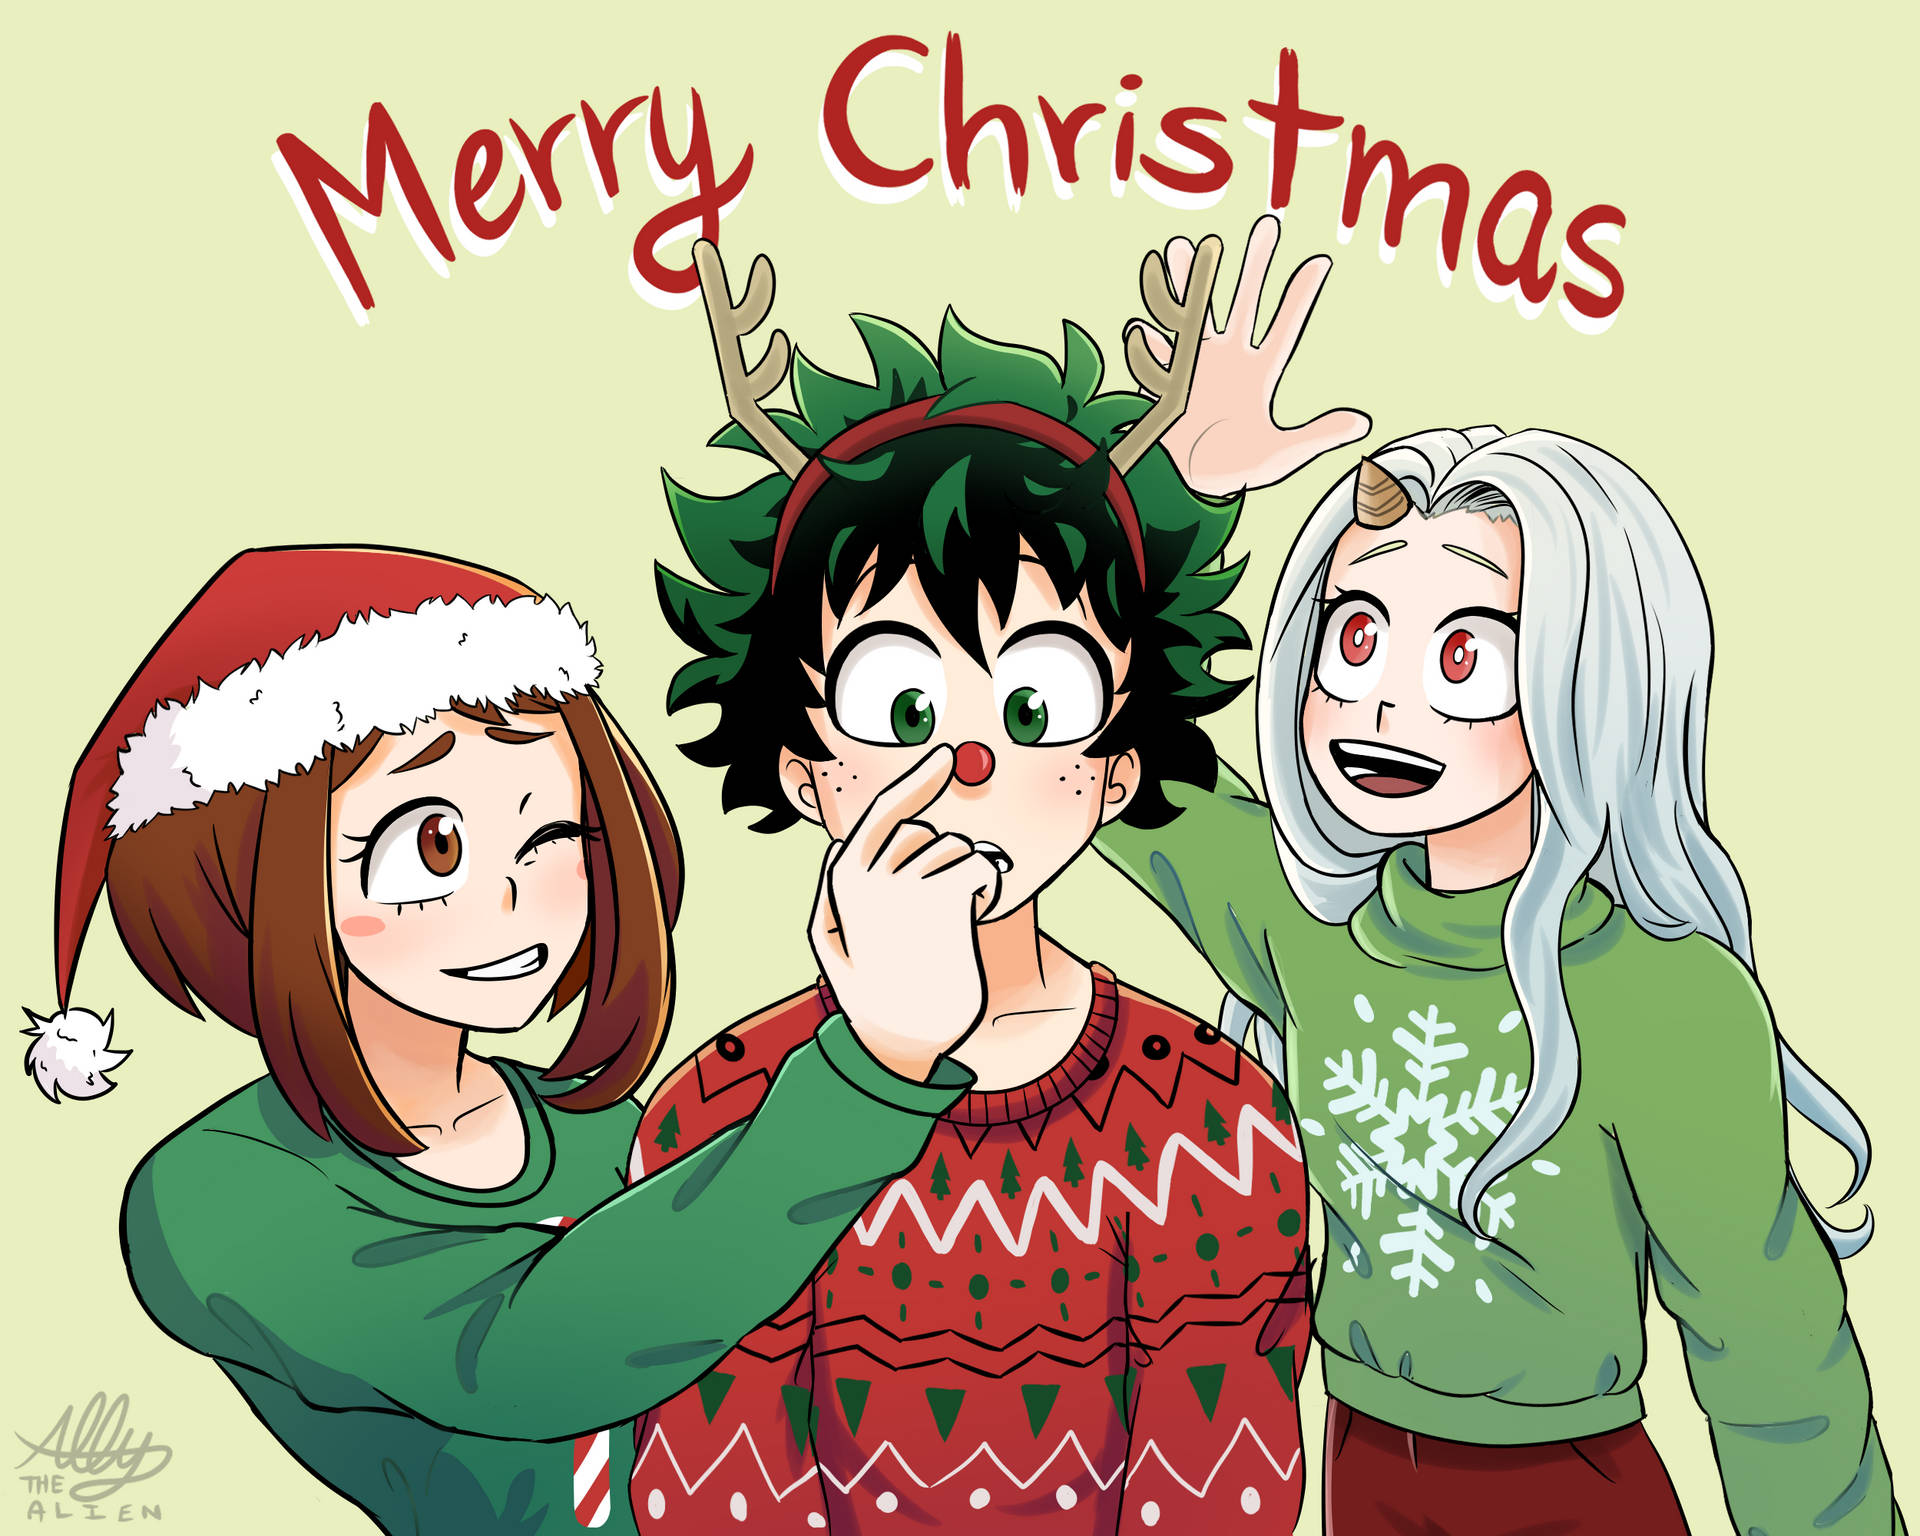 Anime Christmas Wallpapers